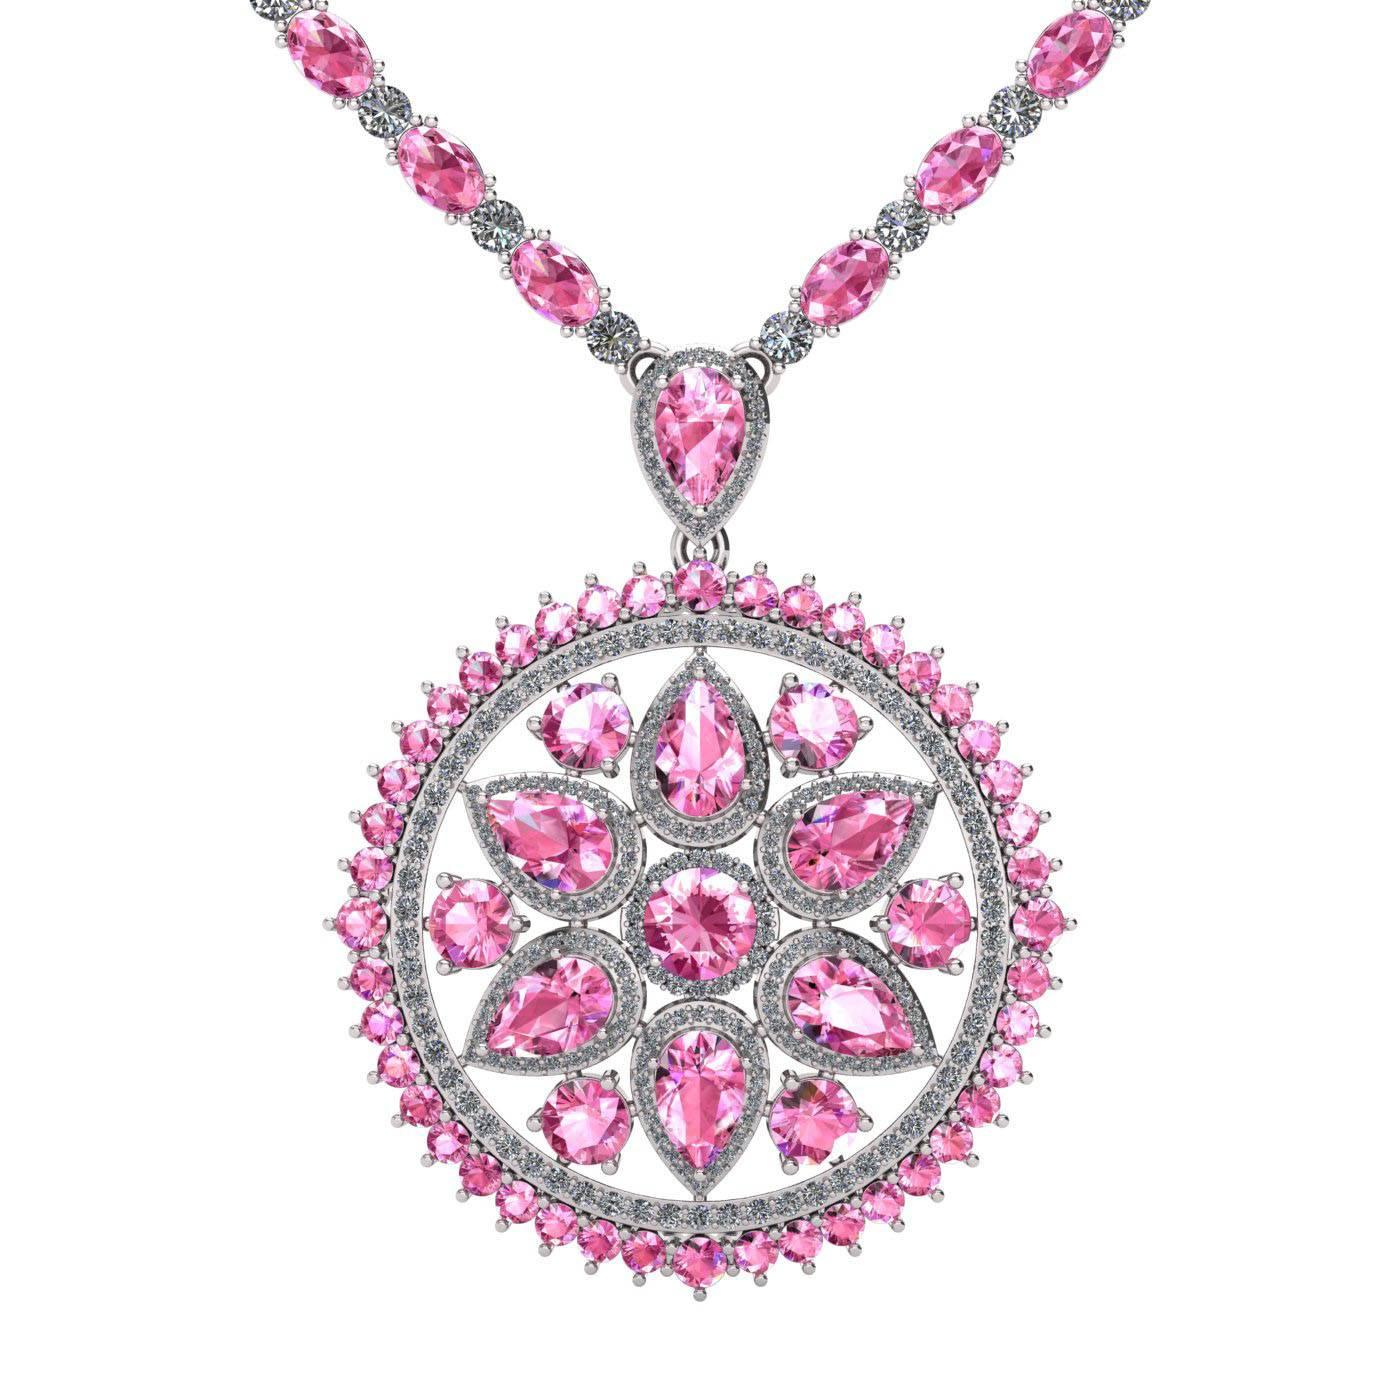  Pink Sapphire Diamond Tennis Necklace Medallion by Juliette Wooten White Gold 